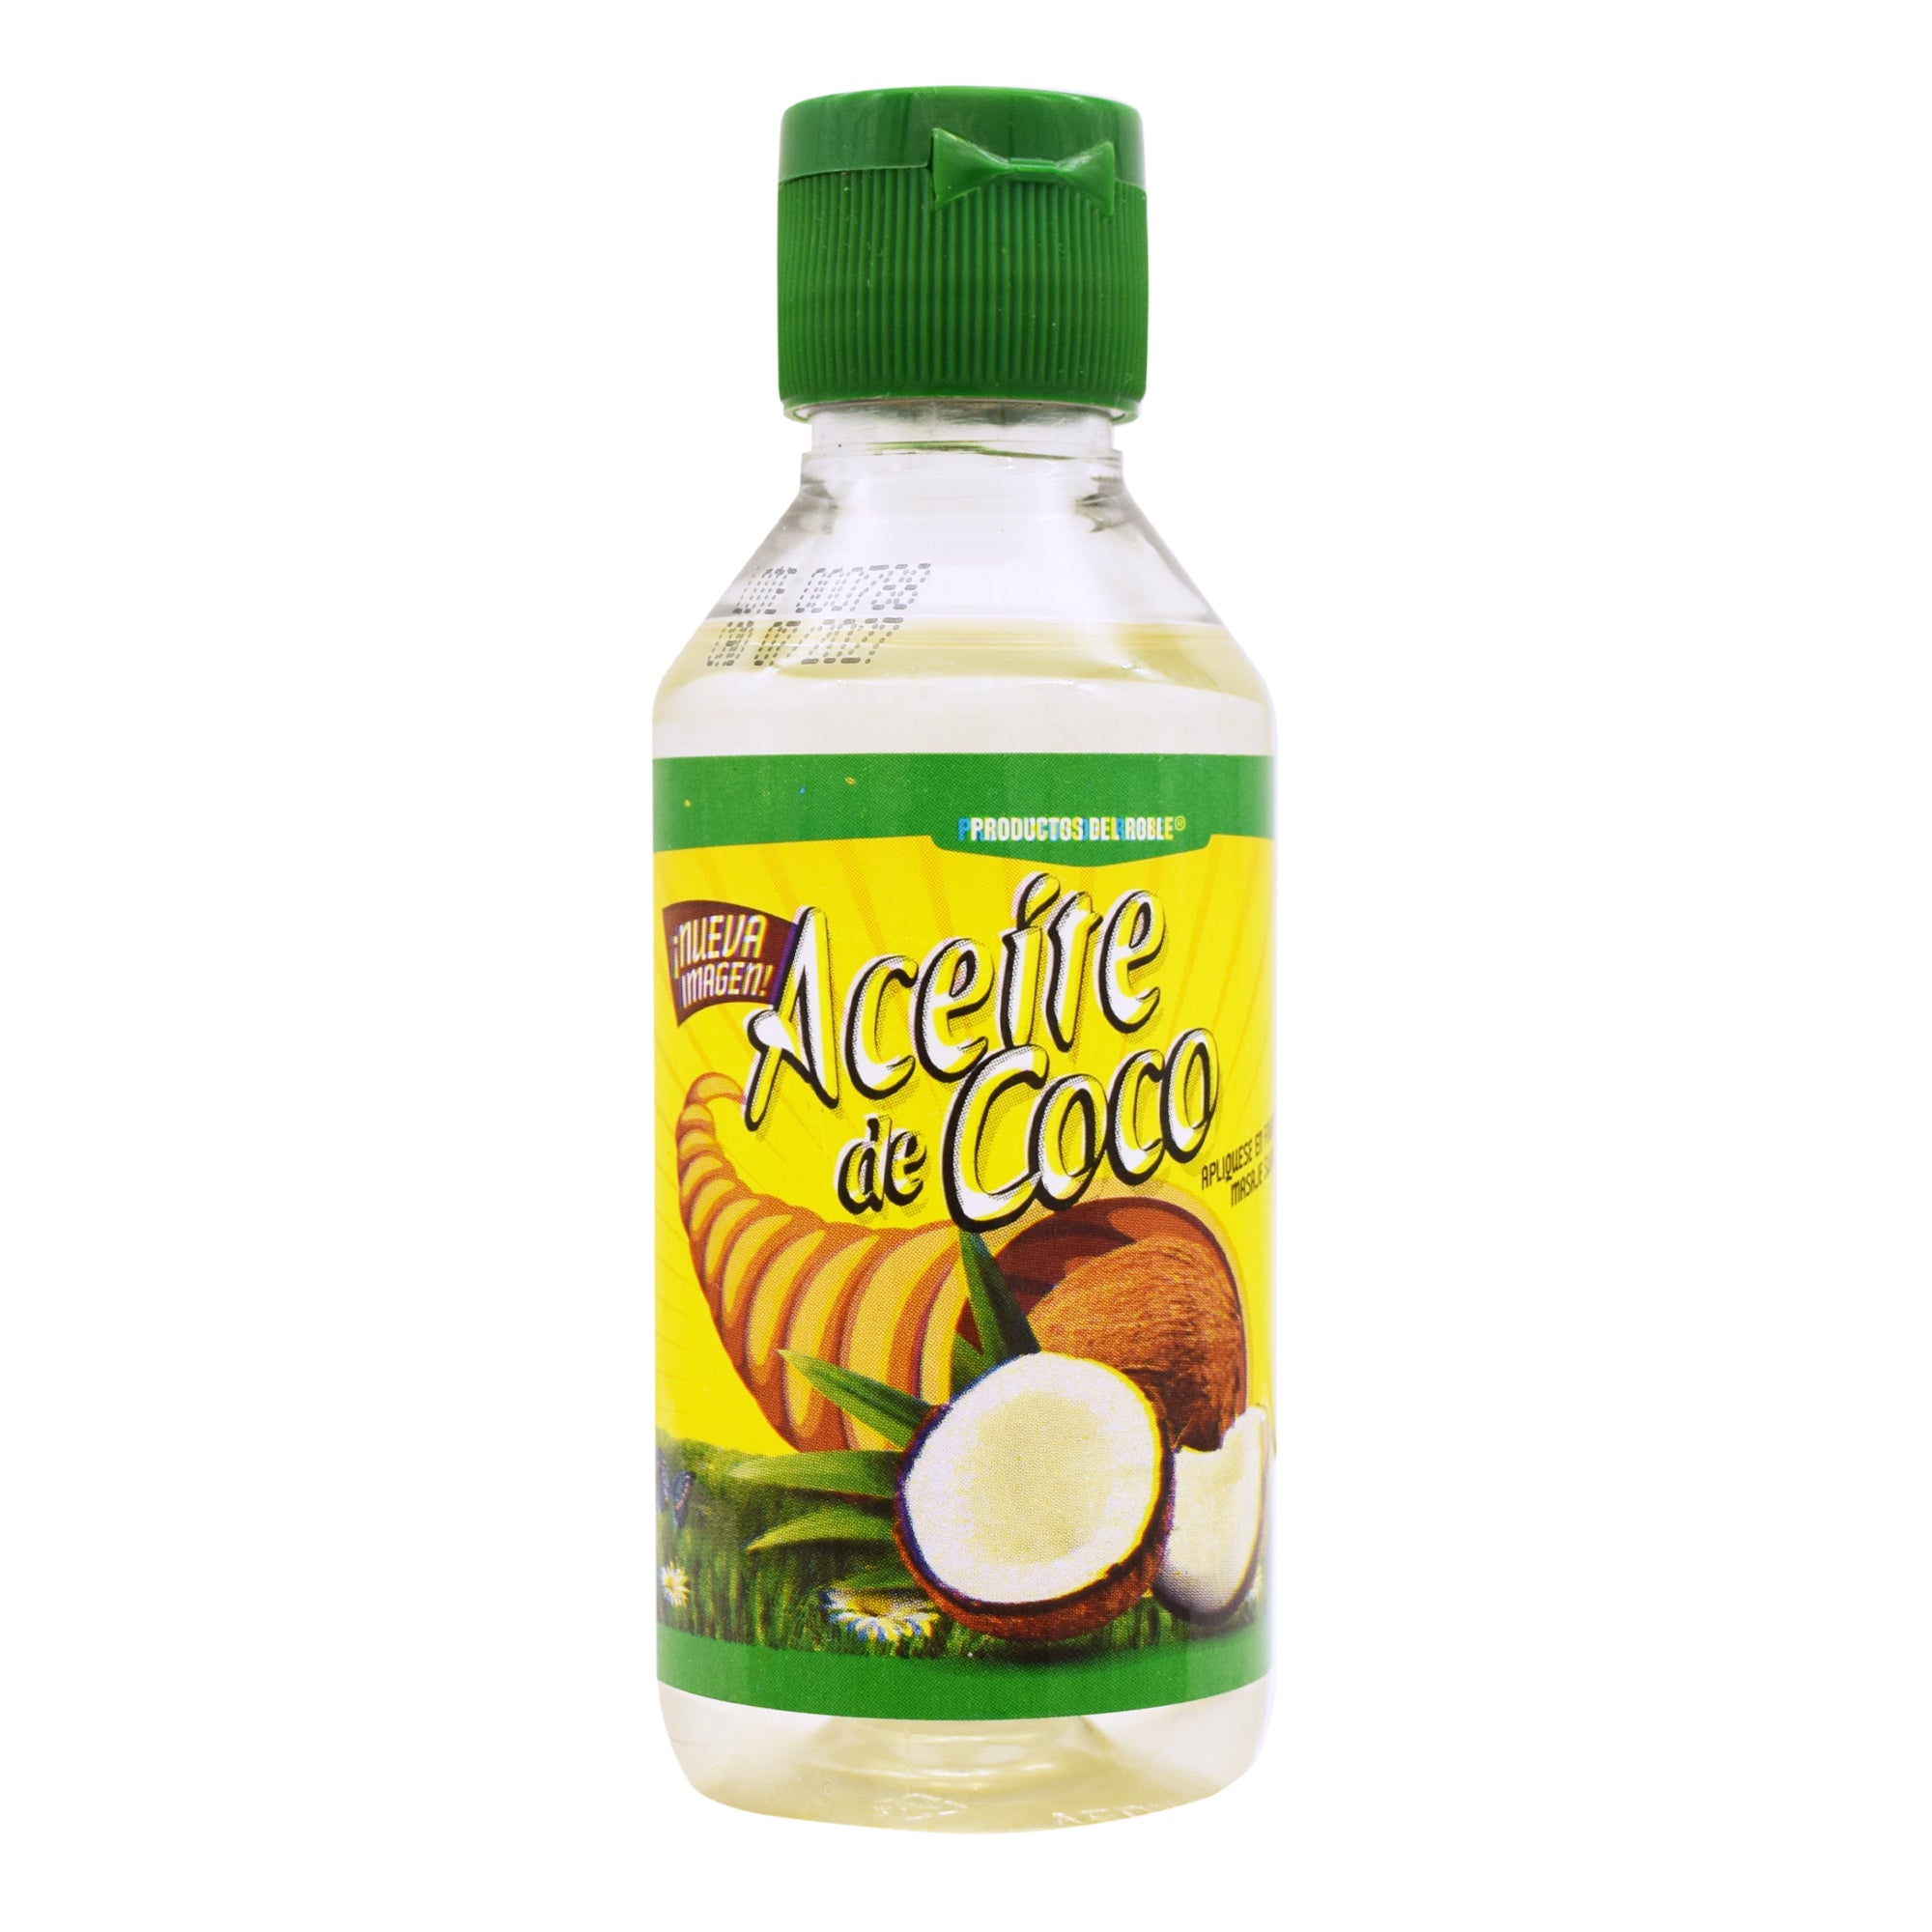 Aceite de coco 120 ml productos del roble - Súper Naturista